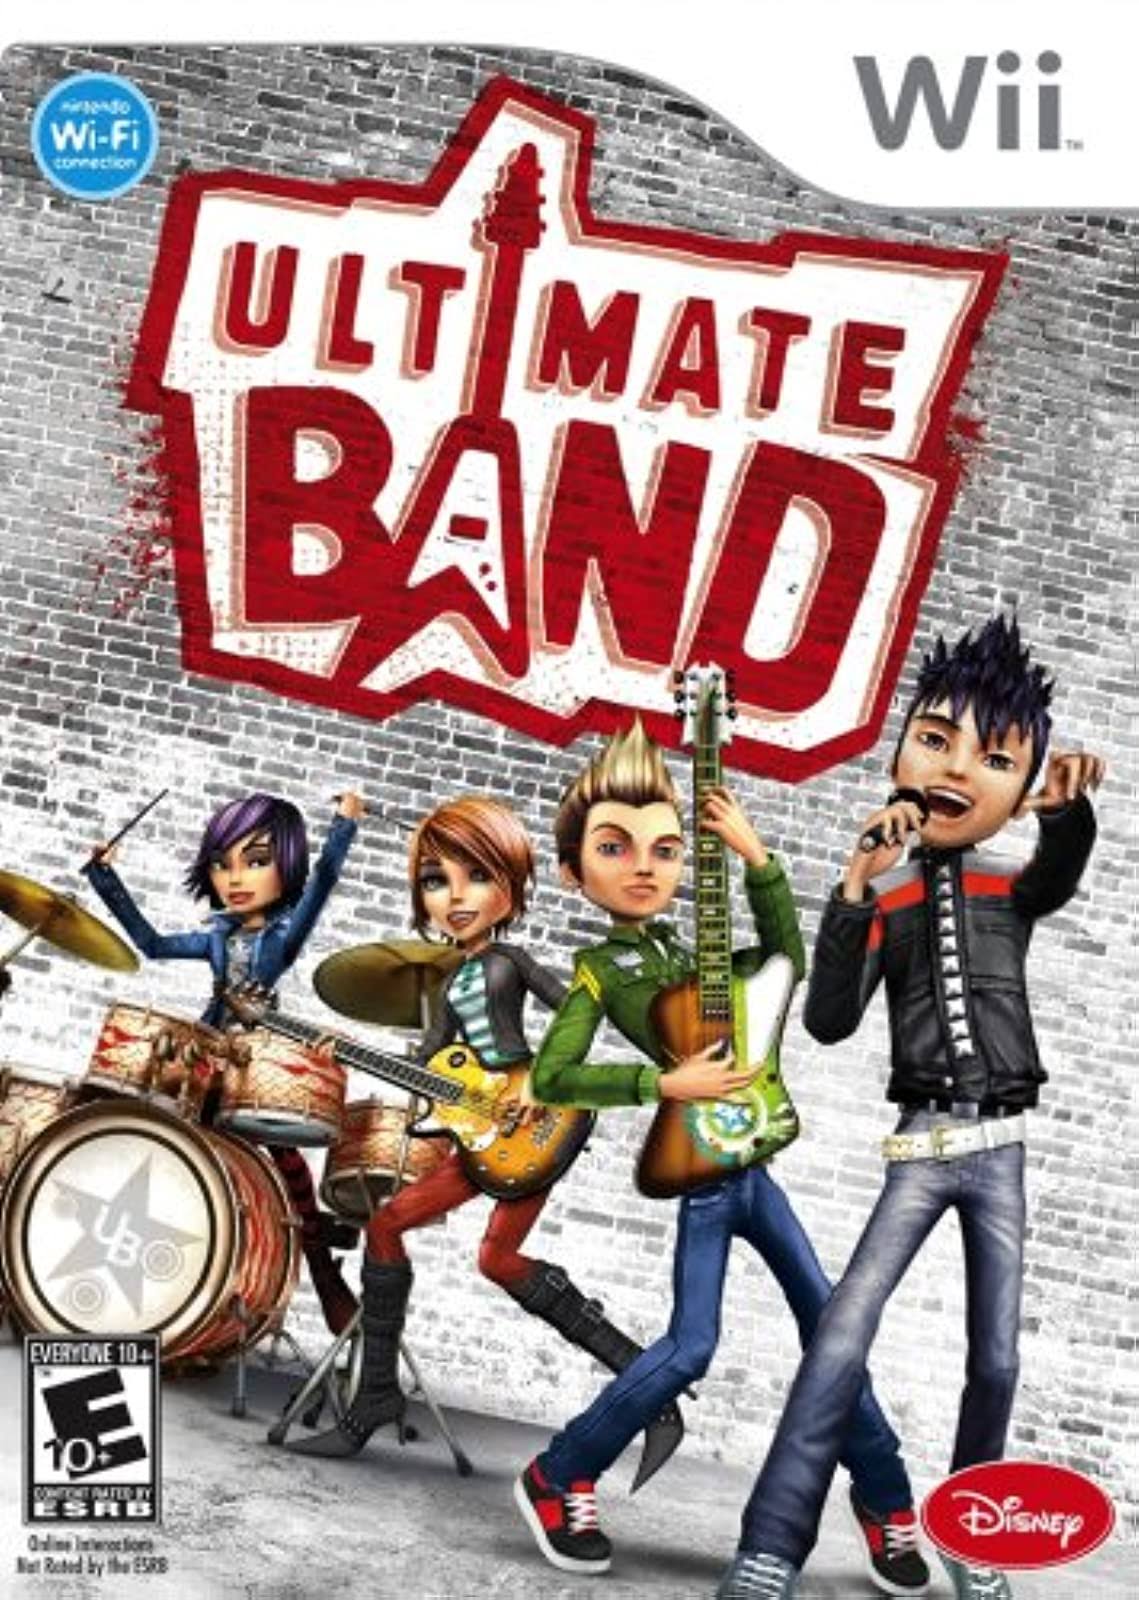 Ultimate Band - Nintendo Wii